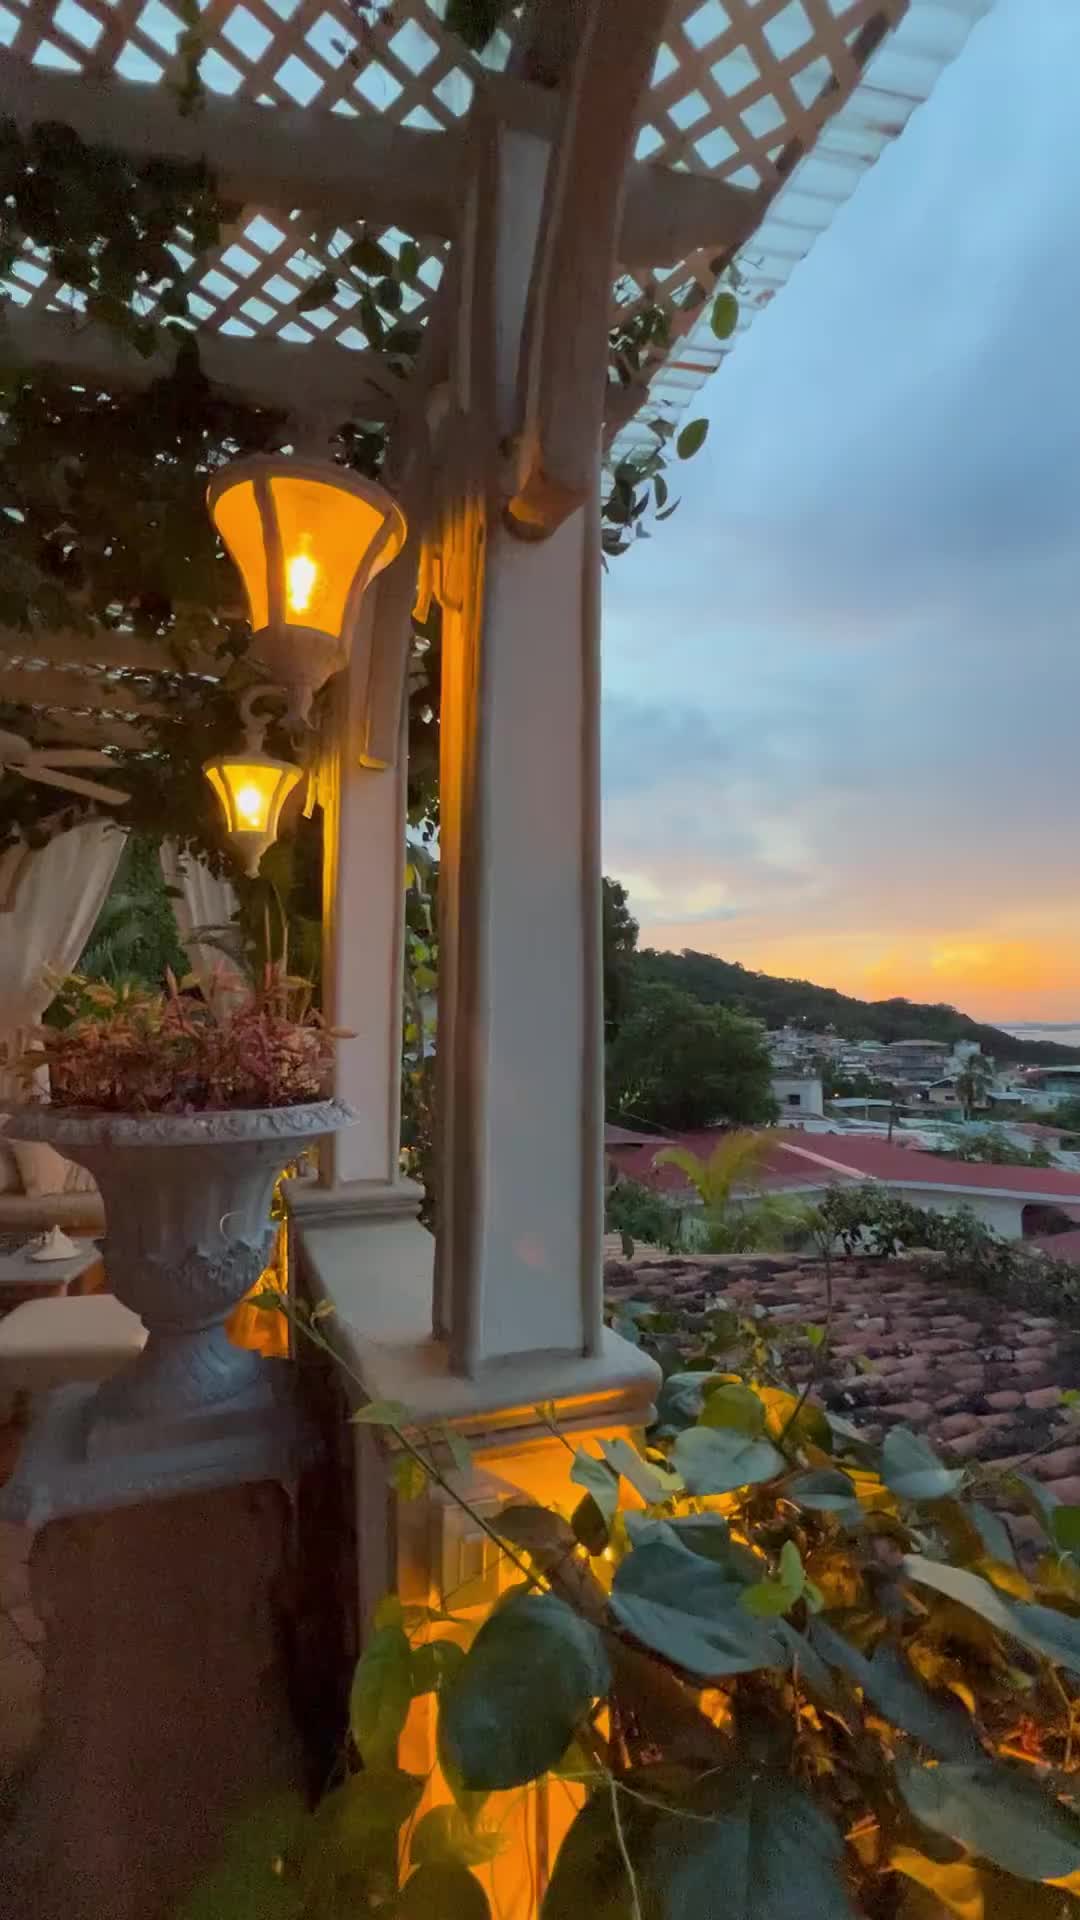 Stunning Sunset at Villa Caprichosa, Taboga, Panama